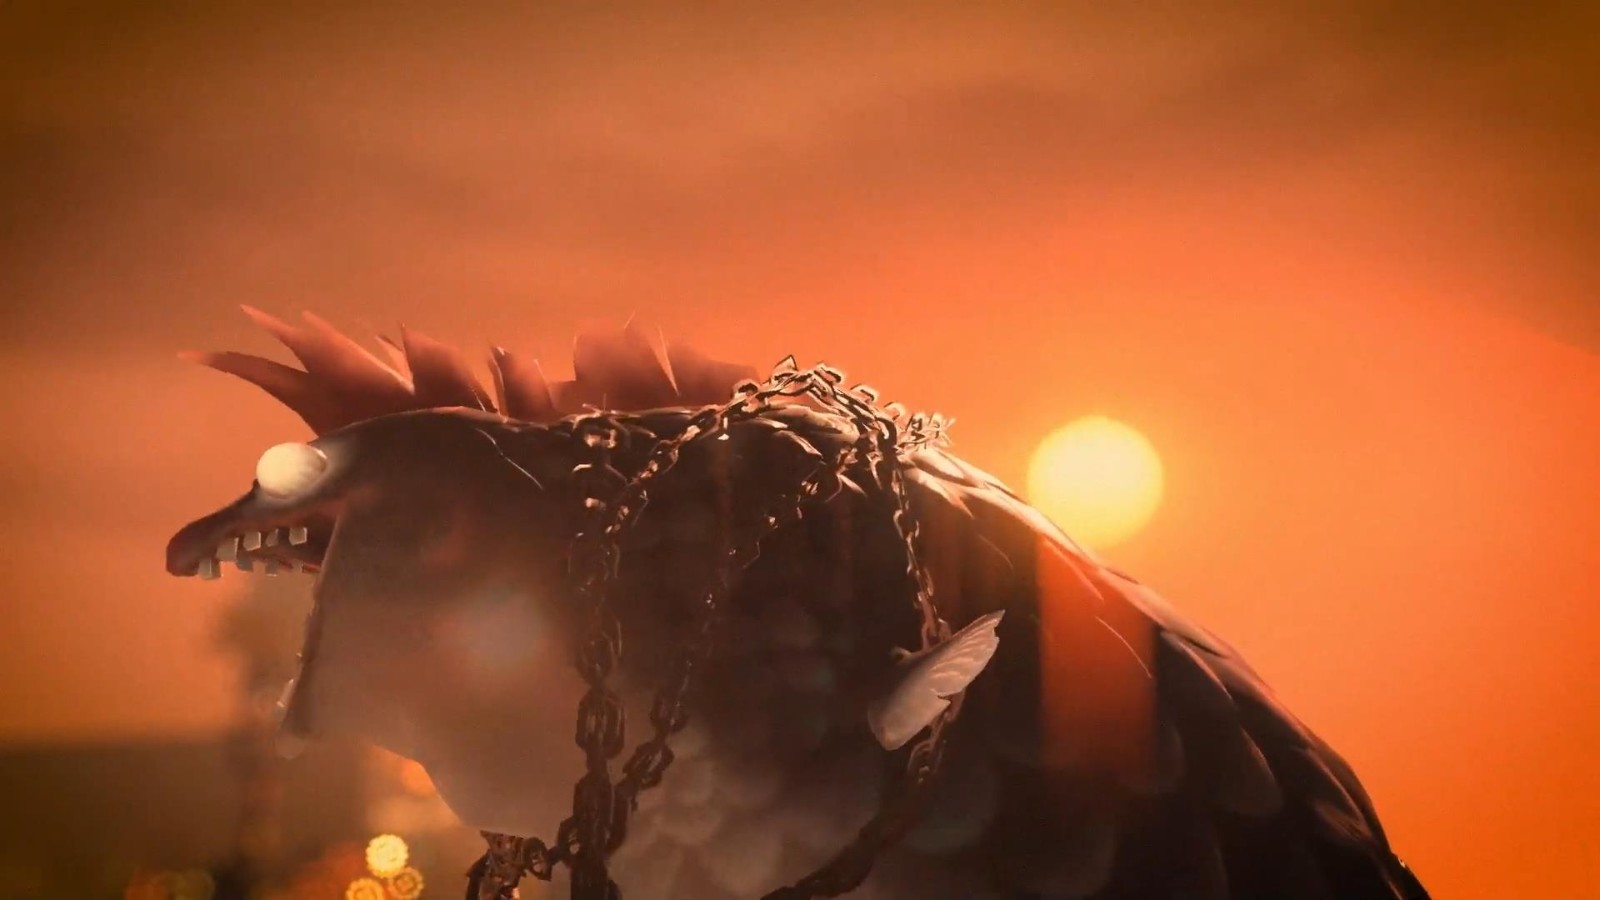 《喷射战士3》今年夏季发售 新预告展示打工模式